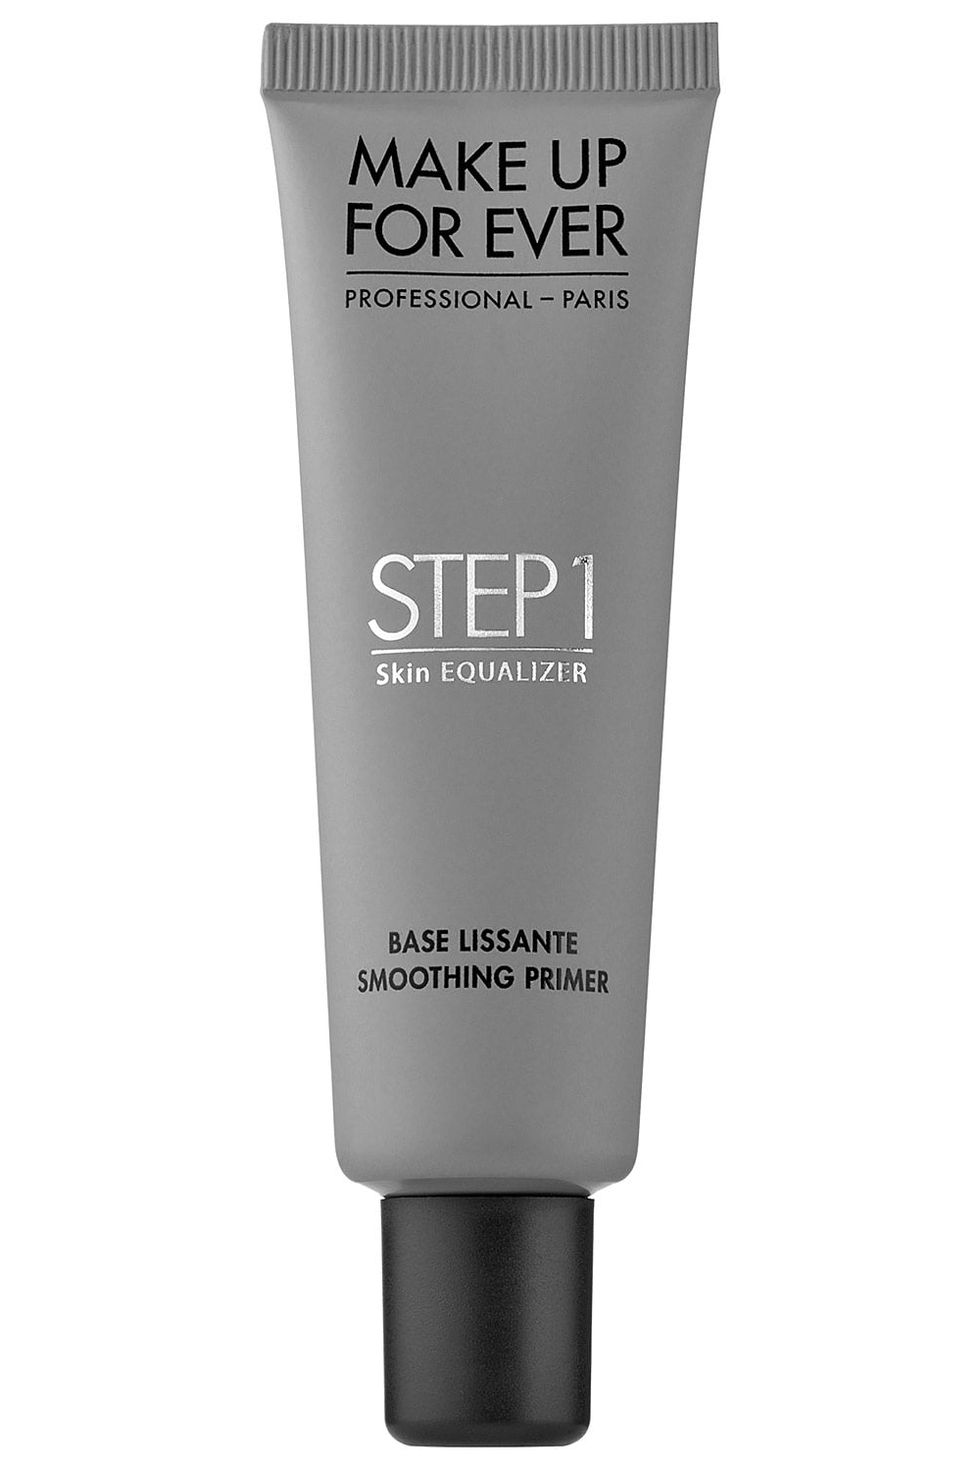 Make Up For Ever Step 1 Skin Equalizer Primer